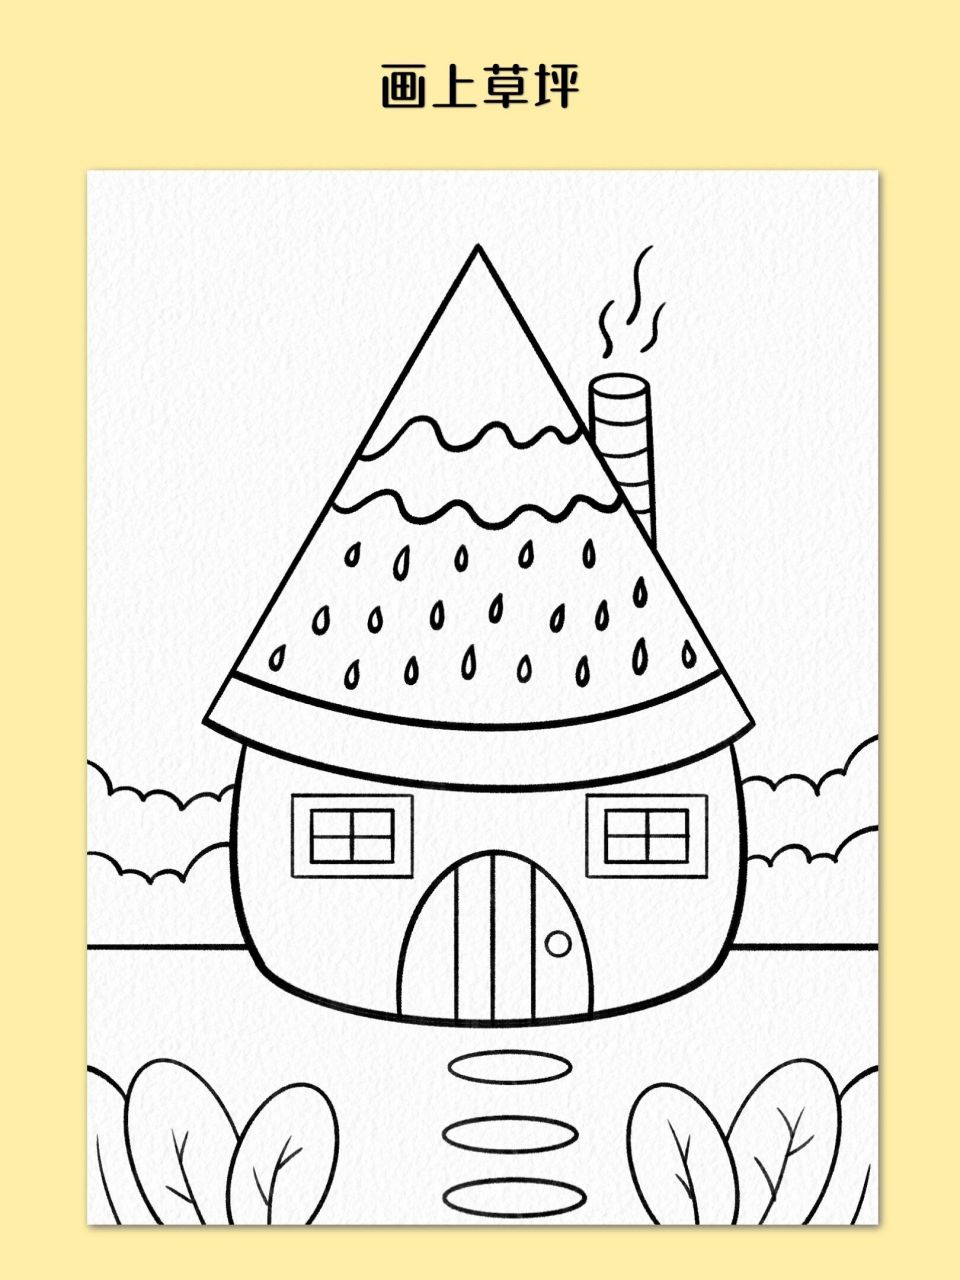 西瓜房子创意画 暑假在家来跟着我画有趣的西瓜房子吧,简单易学,幼儿